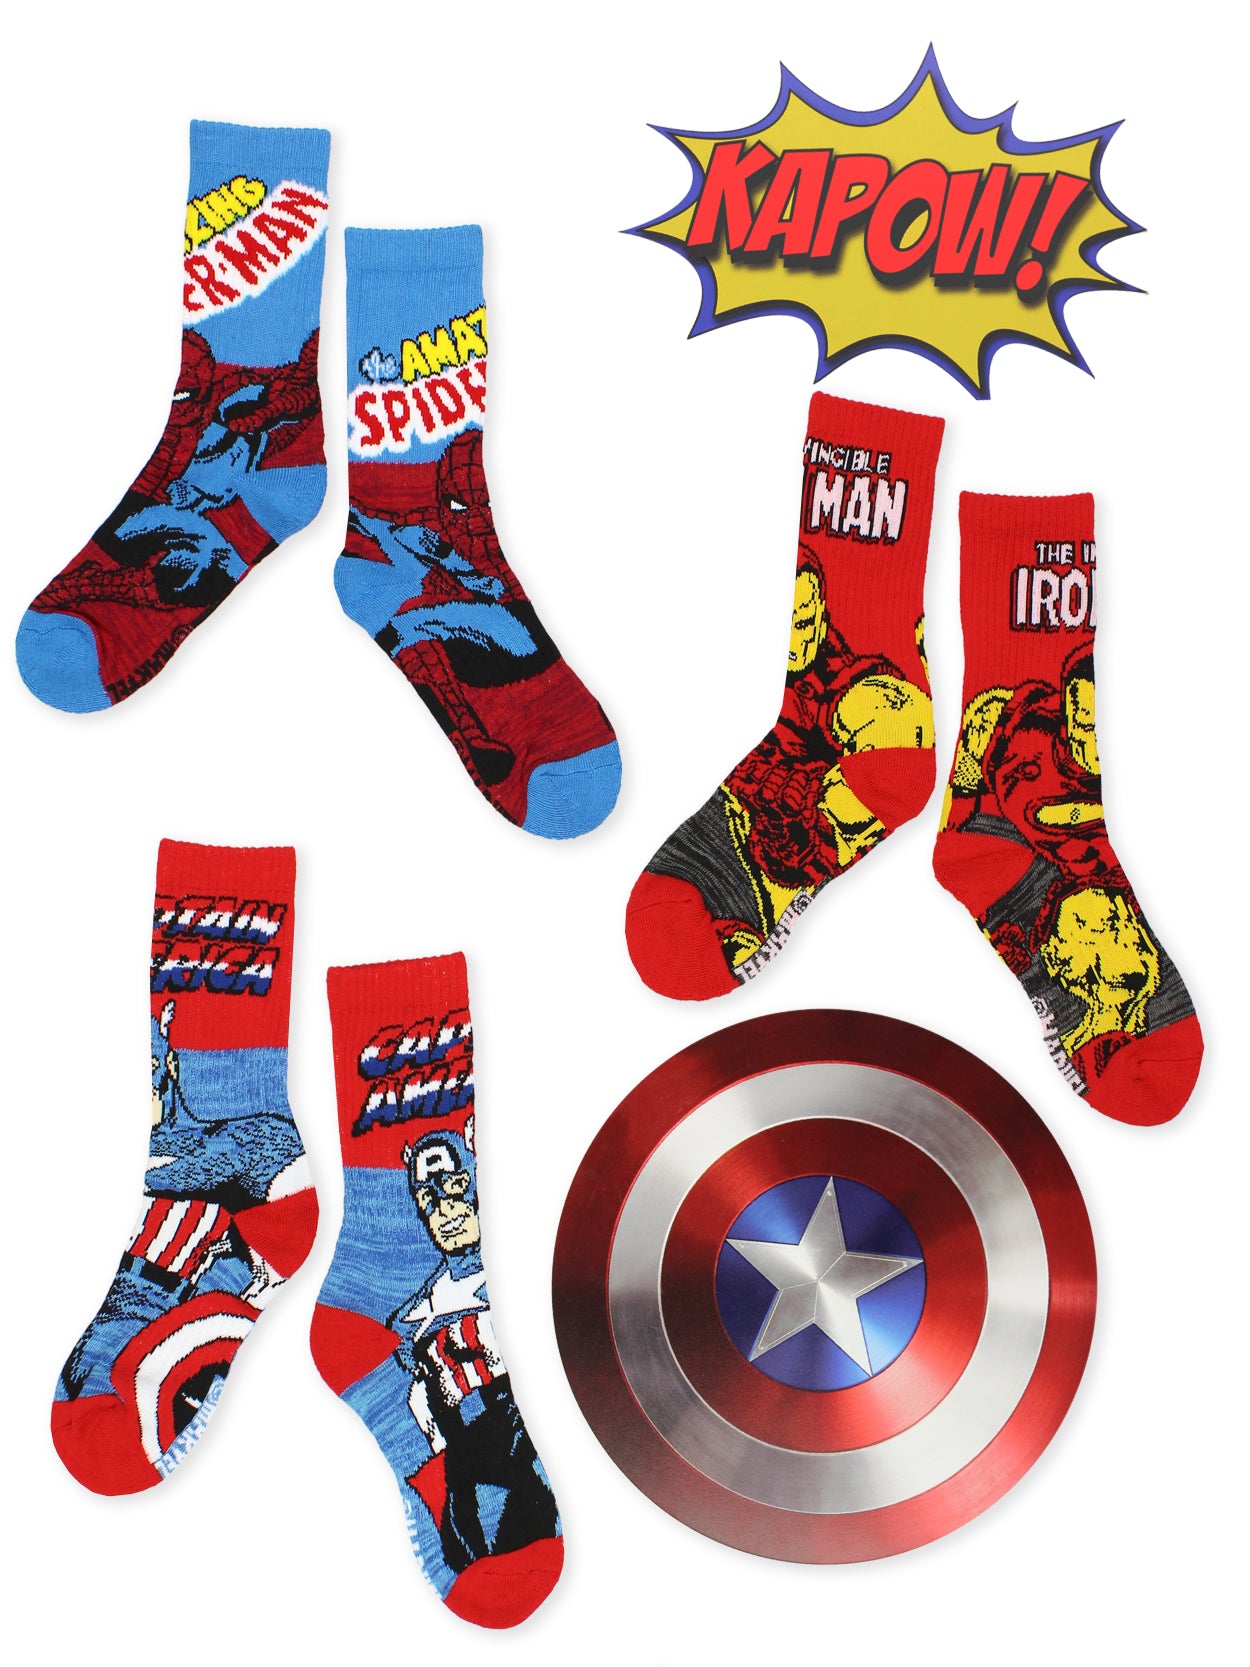 Marvel Avengers Socks, Iron Man and Captain America Design, Pack of 3  Socks, Slipper Socks for Men and Teenagers, Gifts Avengers, One Size EU 41  to